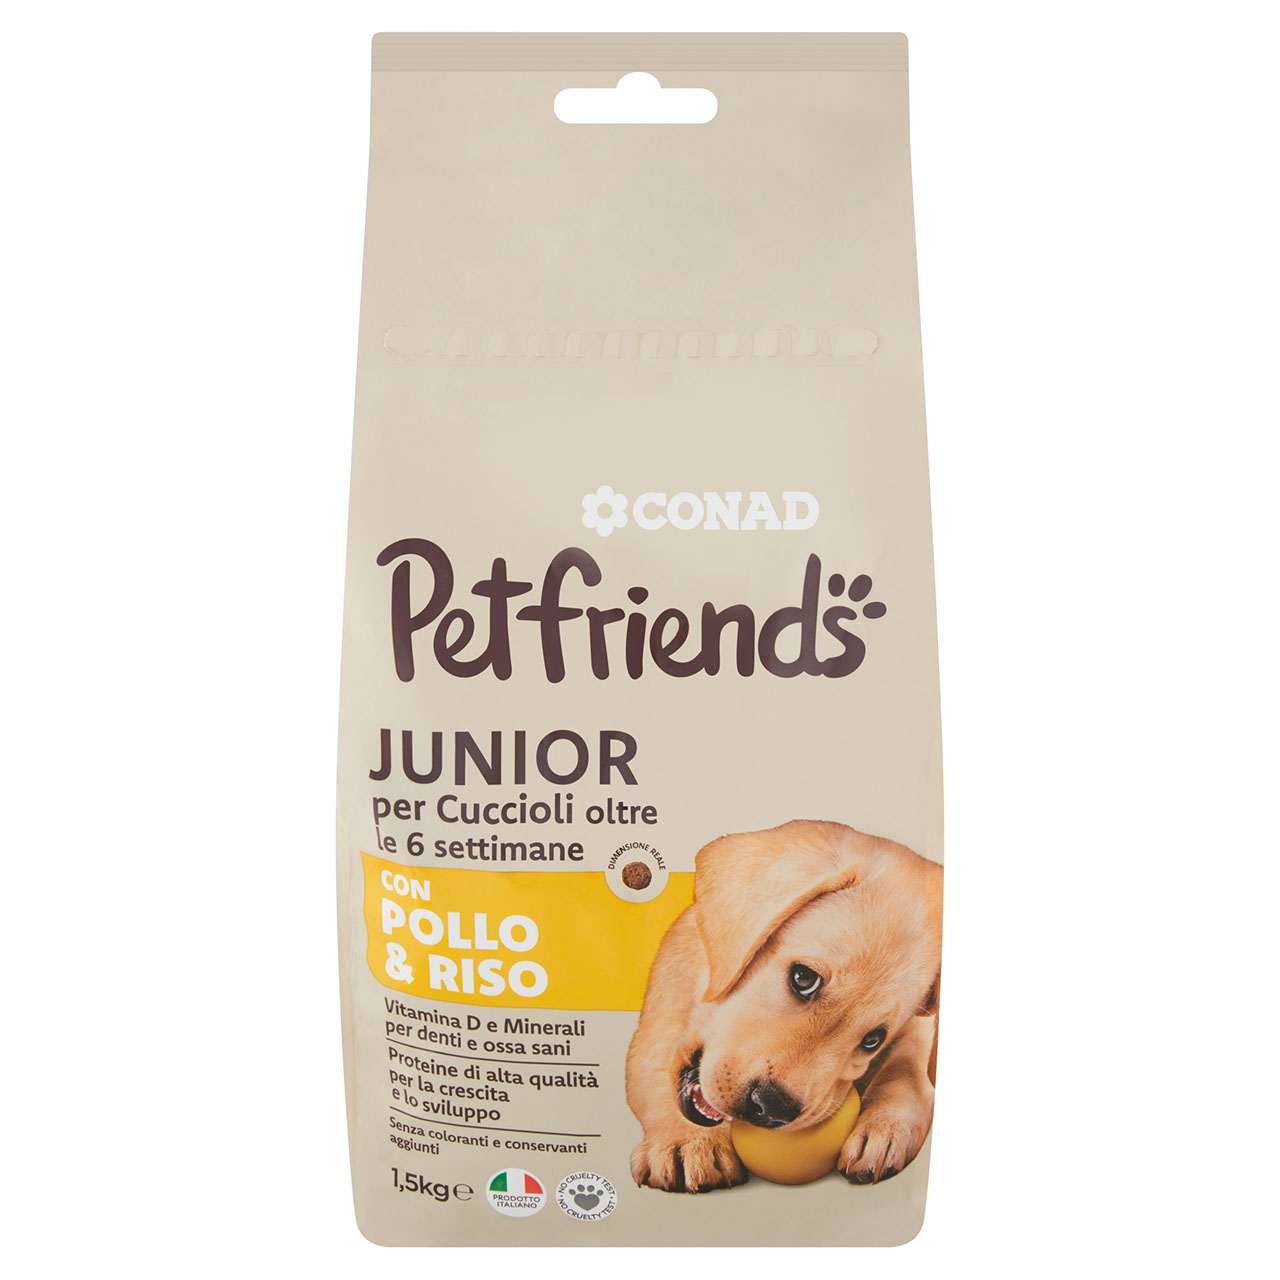 Petfriends Junior, Crocchette Pollo e Riso Conad